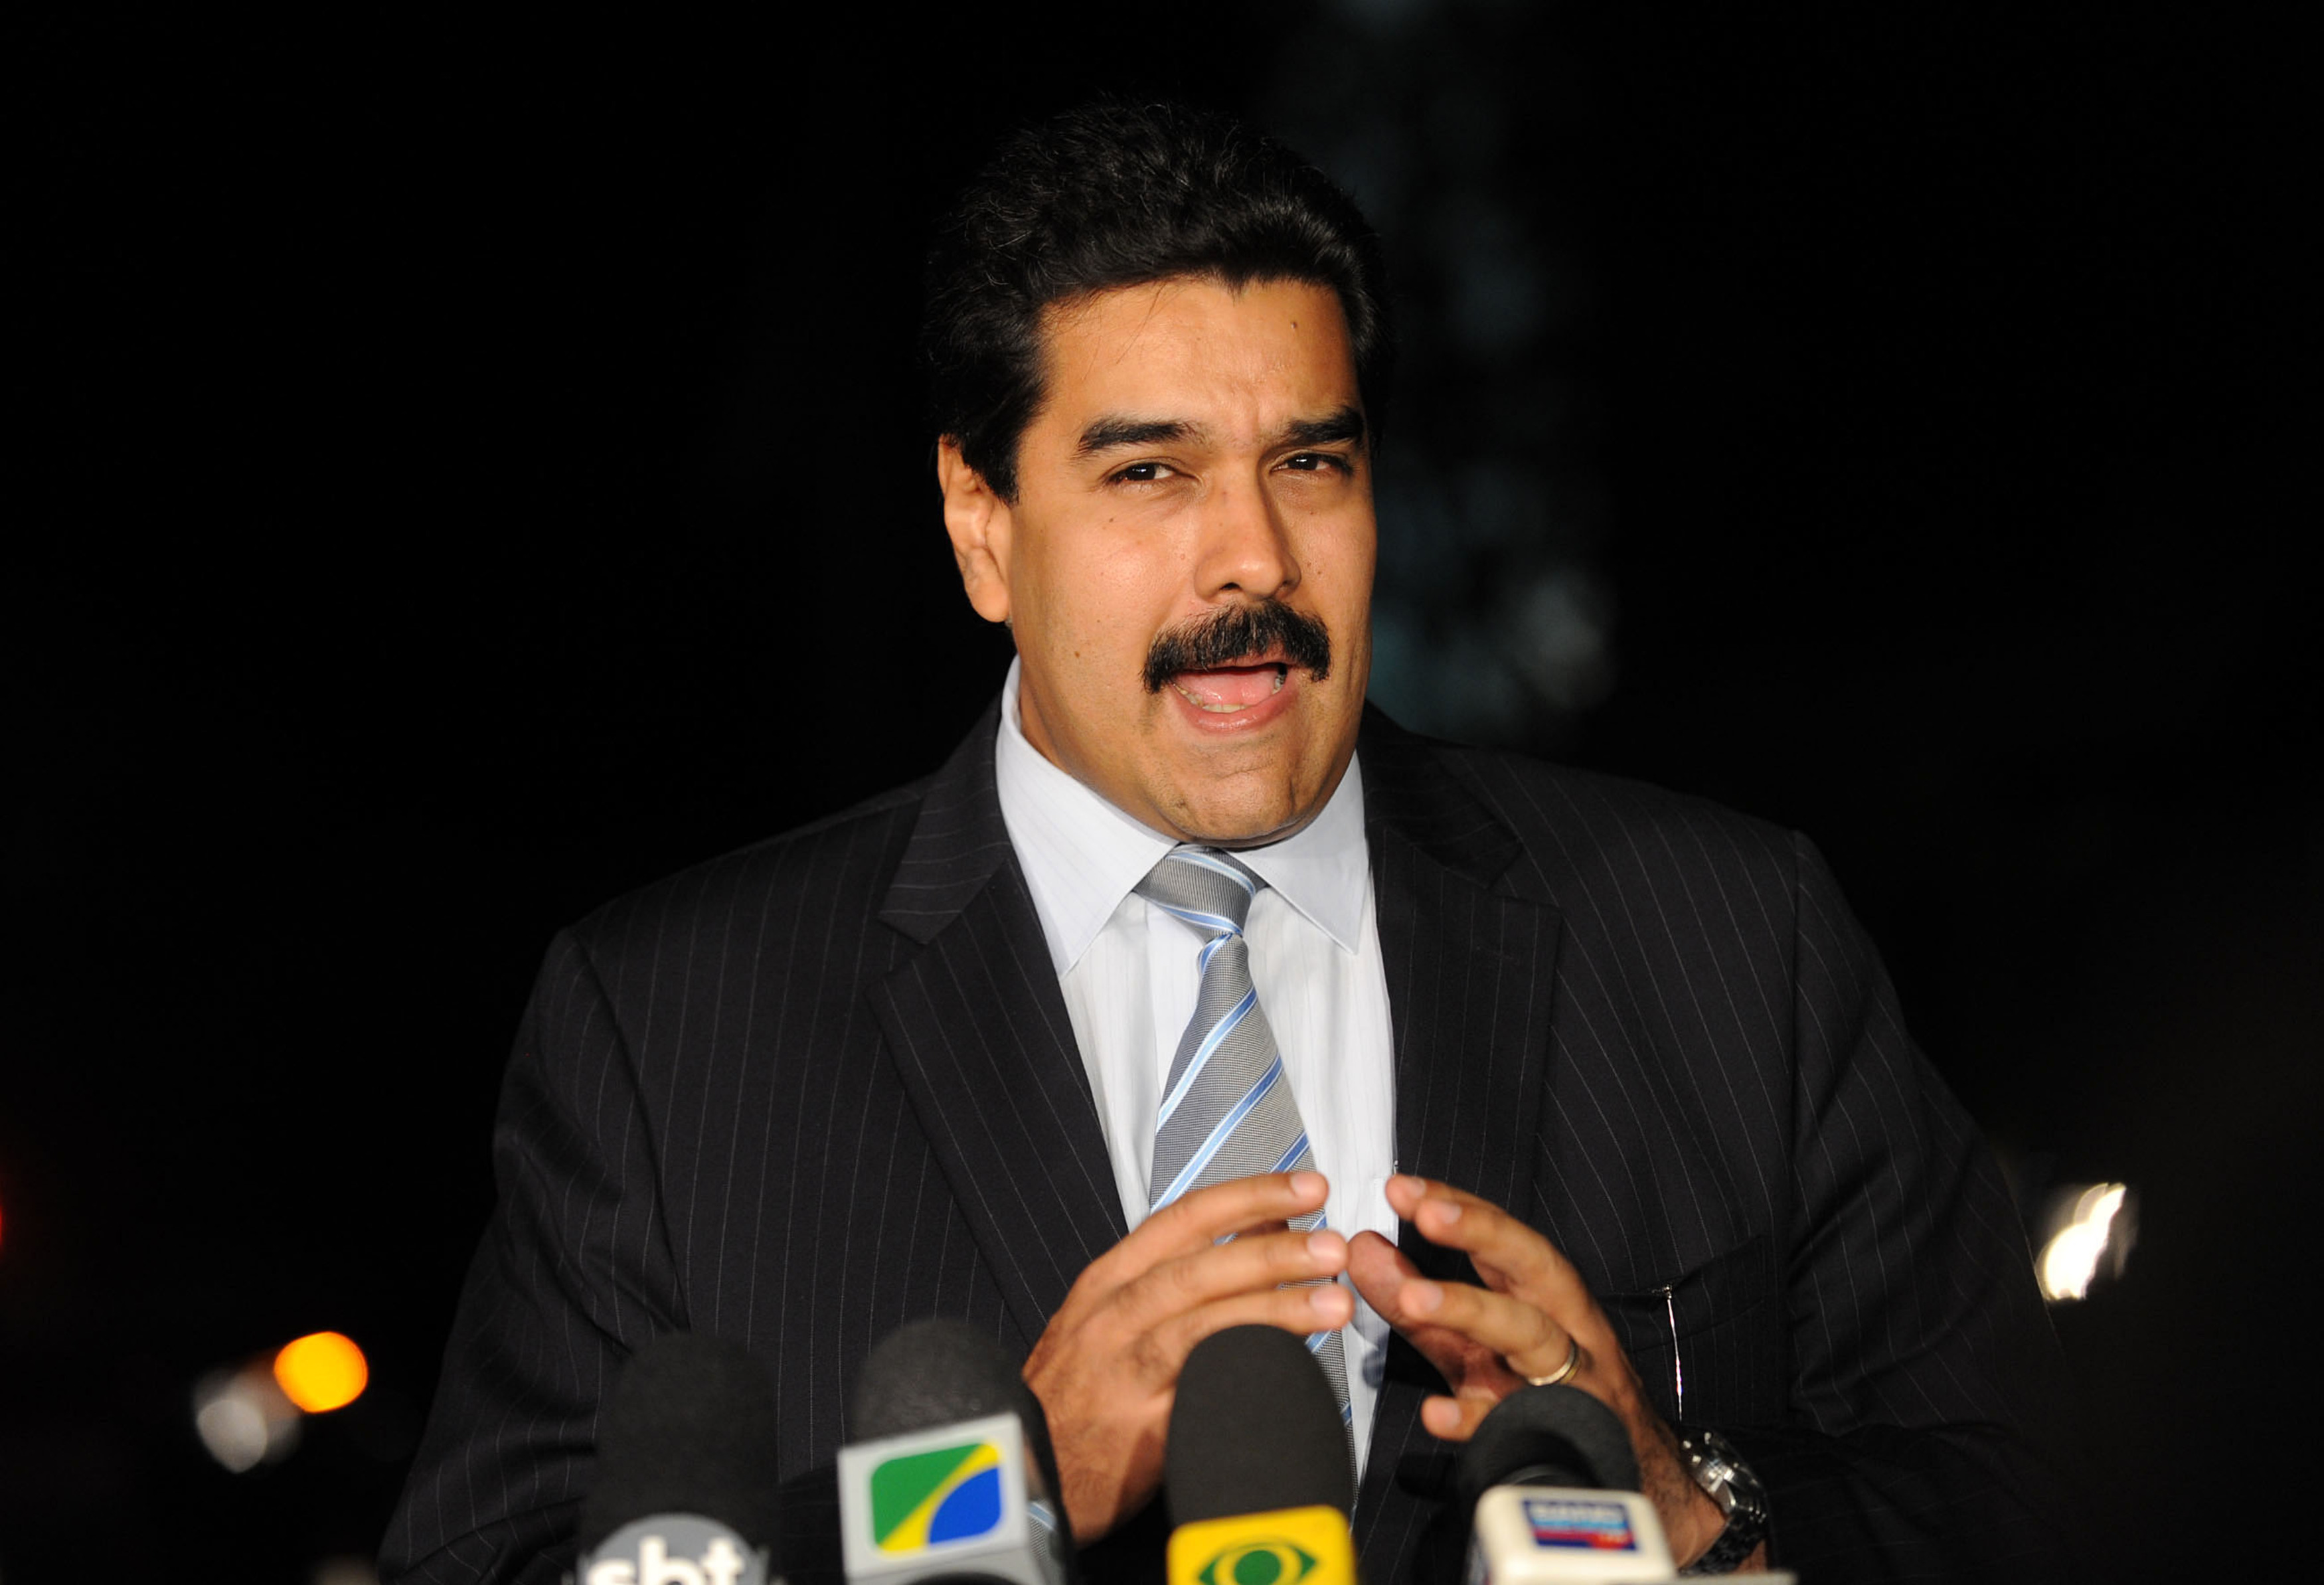 Nicolas_Maduro_-_ABr_26072010FRP8196